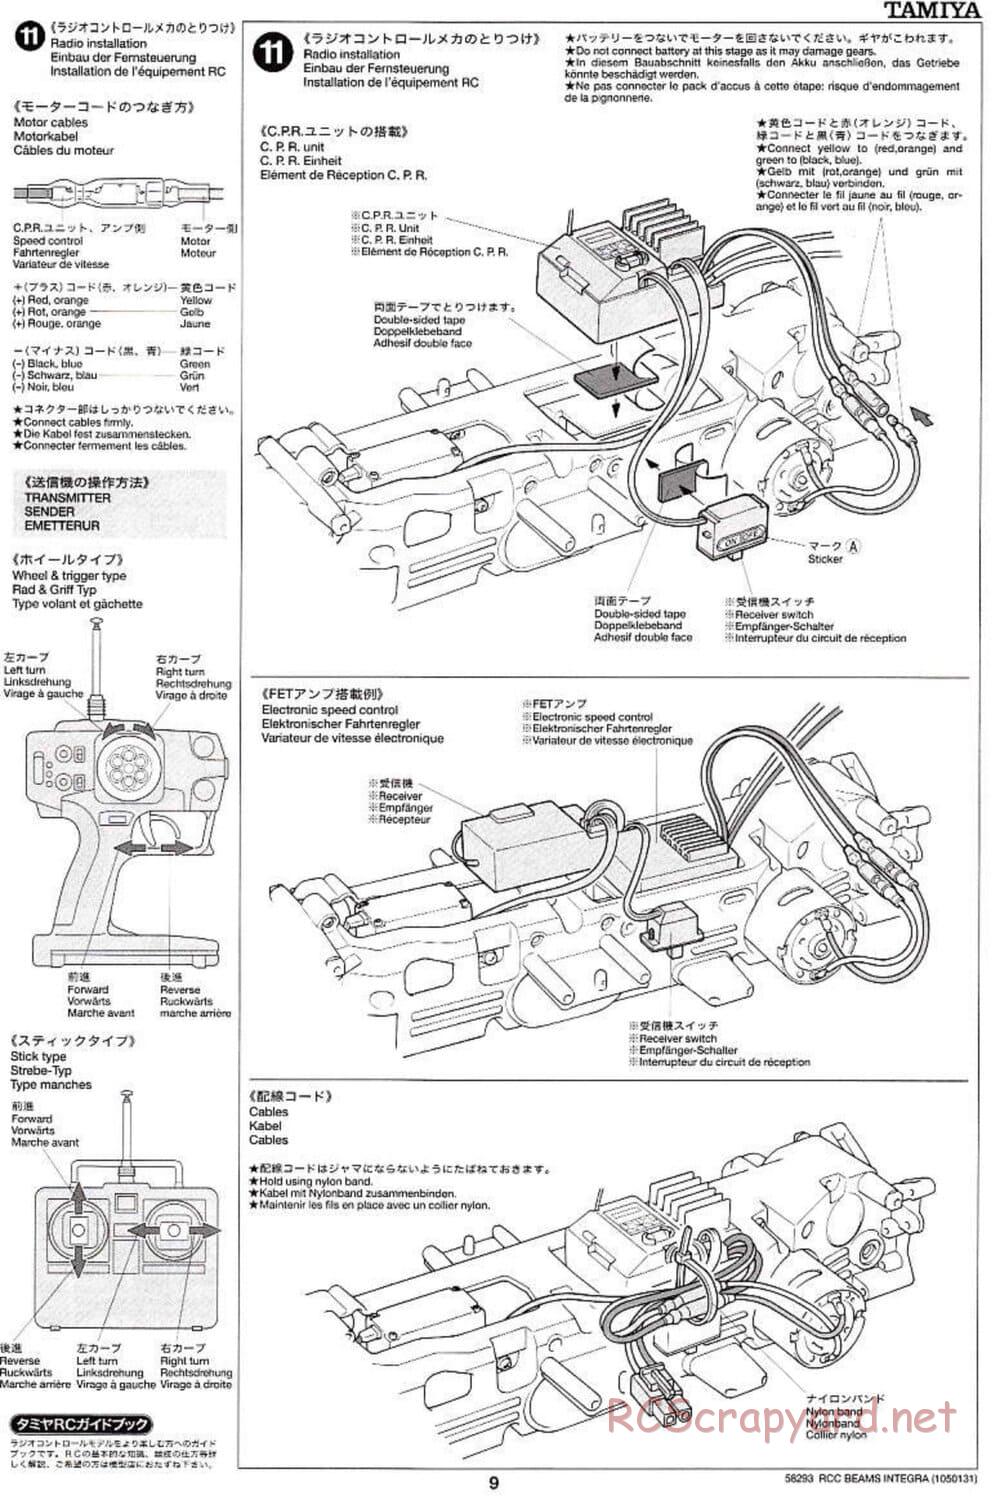 Tamiya - Beams Integra - TL-01 LA Chassis - Manual - Page 9